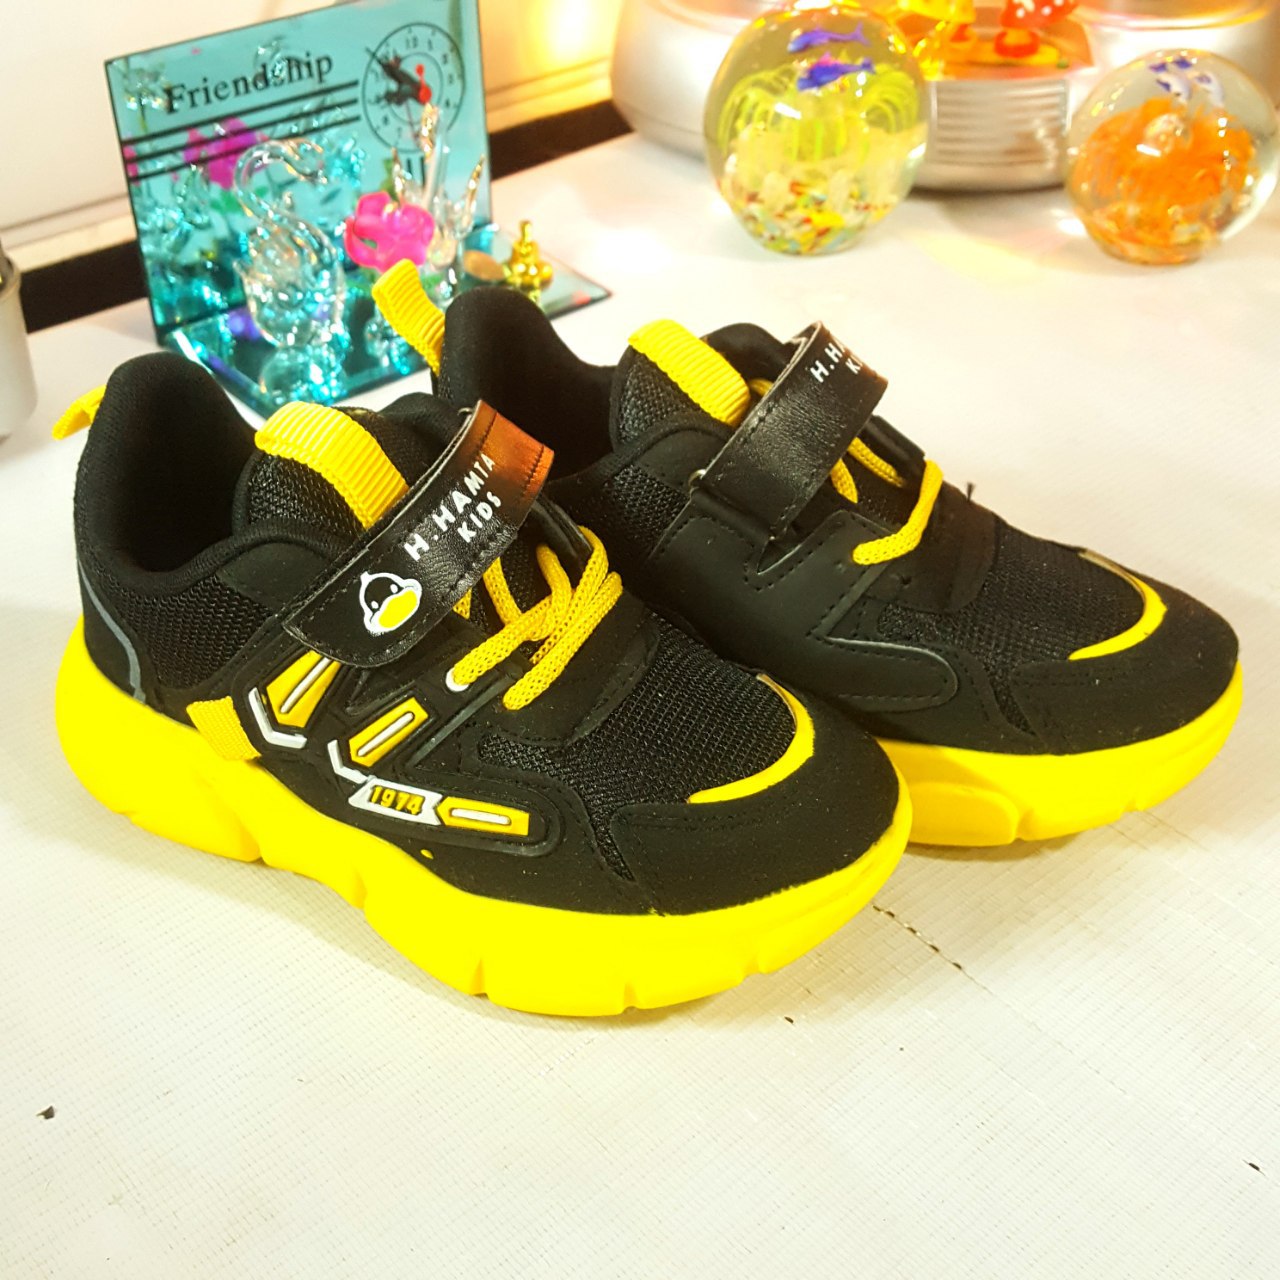      خرید کفش اسپرت راحتی دخترانه پسرانه - طرح  همتا - رنگ سیاه زرد